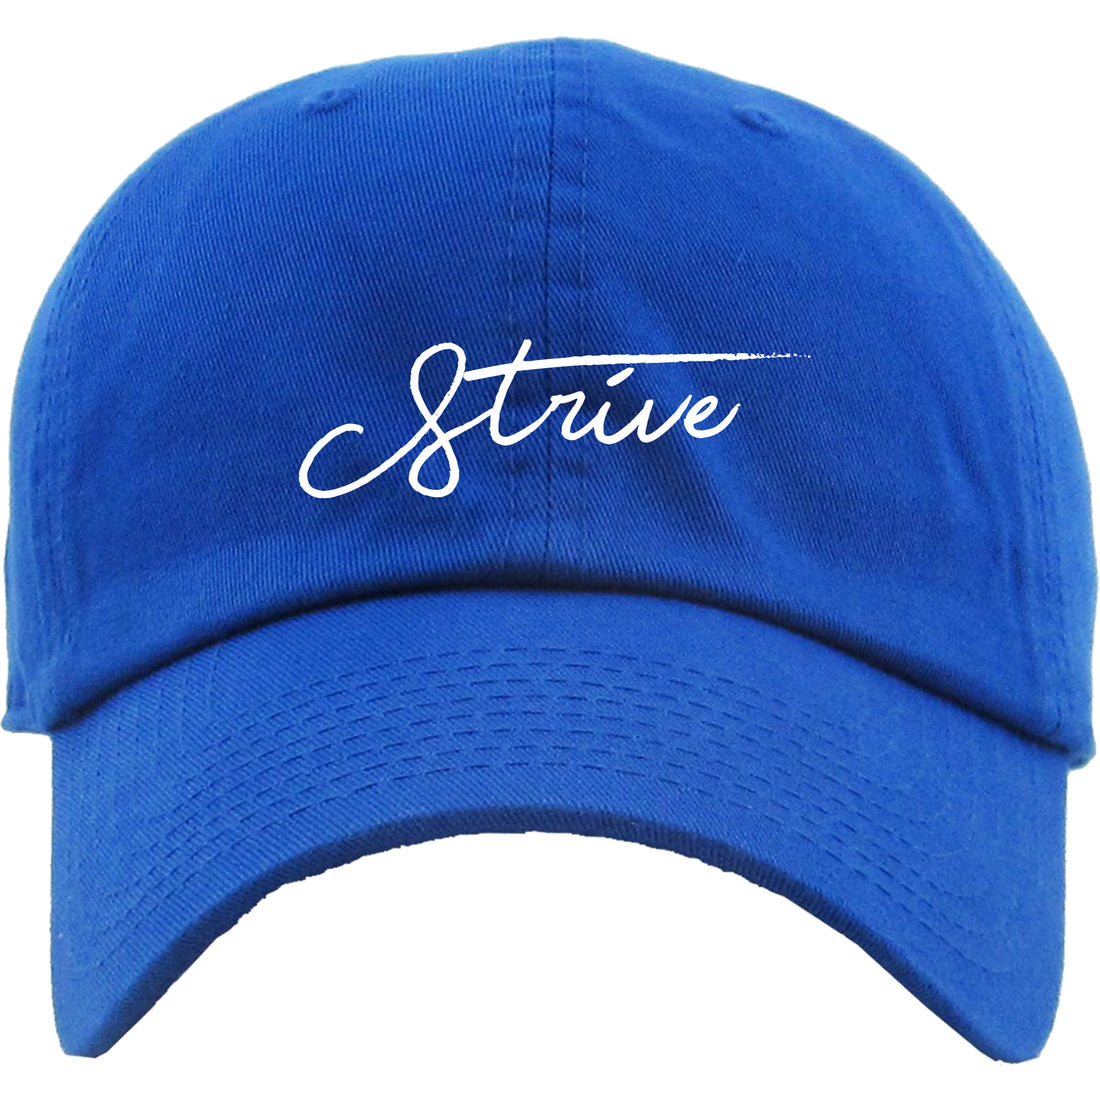 STEM "Strive" Dad Hat - STEM Clothing Group